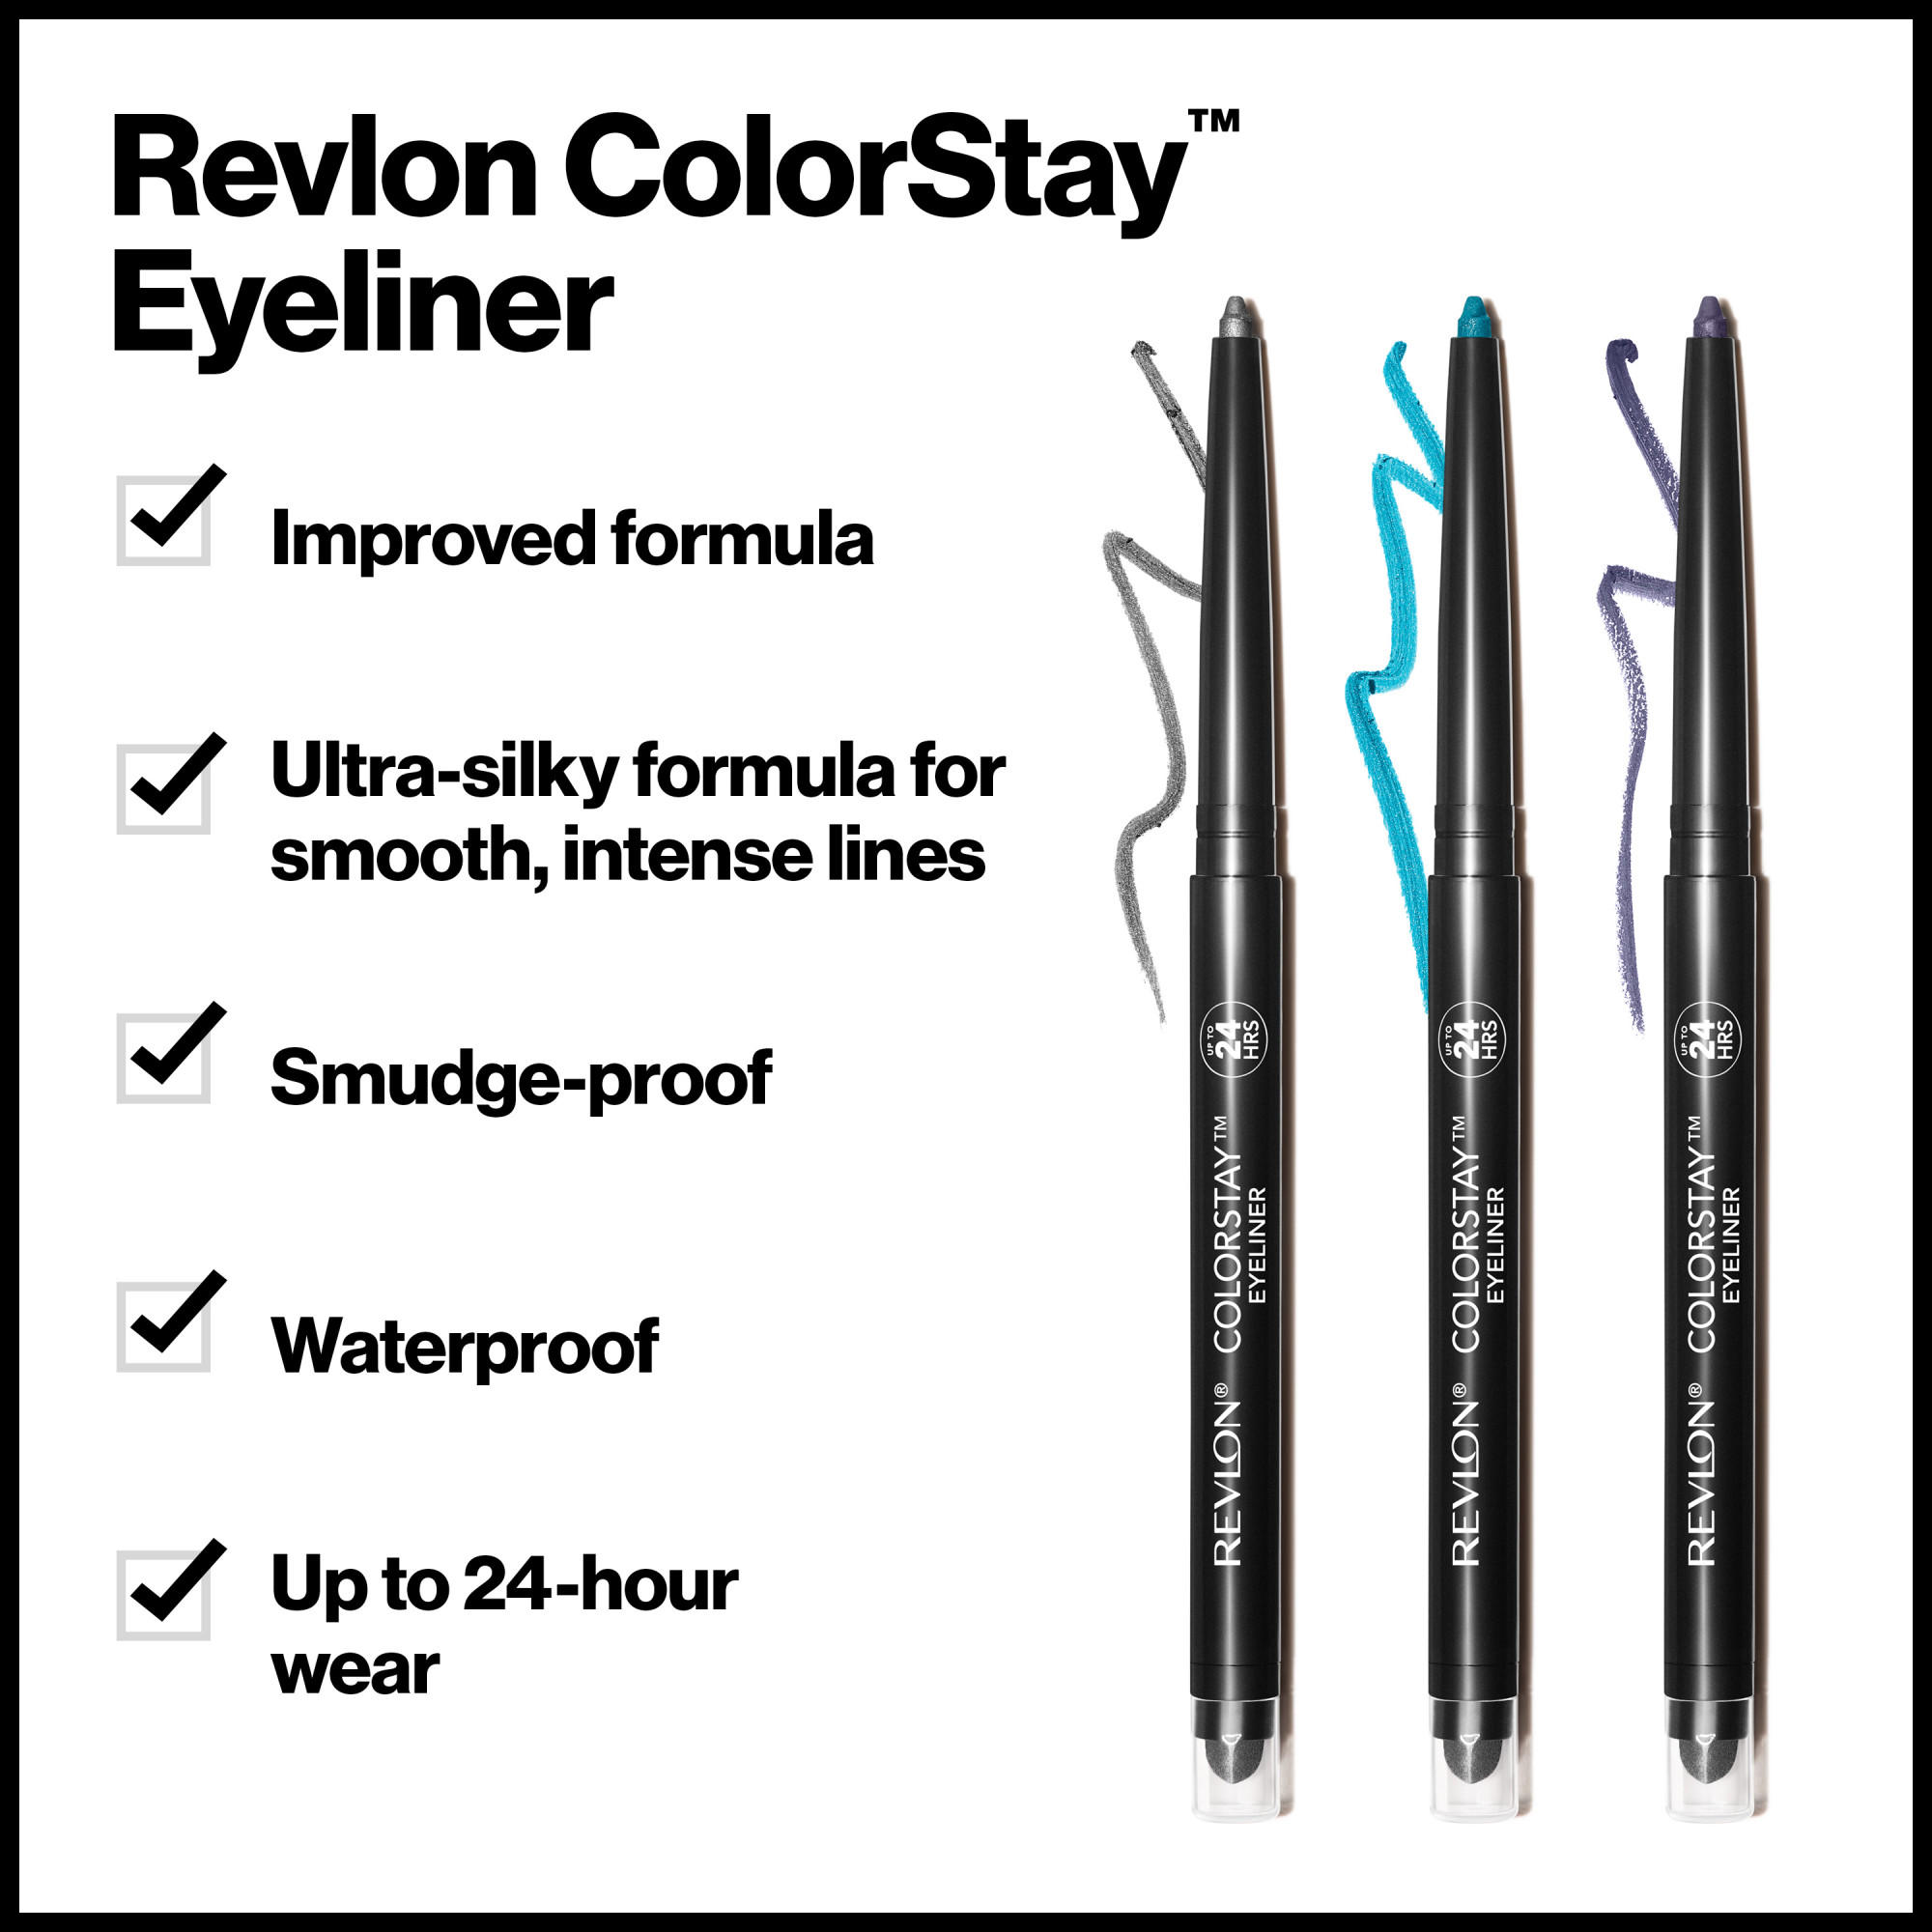 Revlon ColorStay Waterproof Eyeliner Pencil, 24HR Wear, Built-in Sharpener, 201 Black, 0.01 oz - image 5 of 9